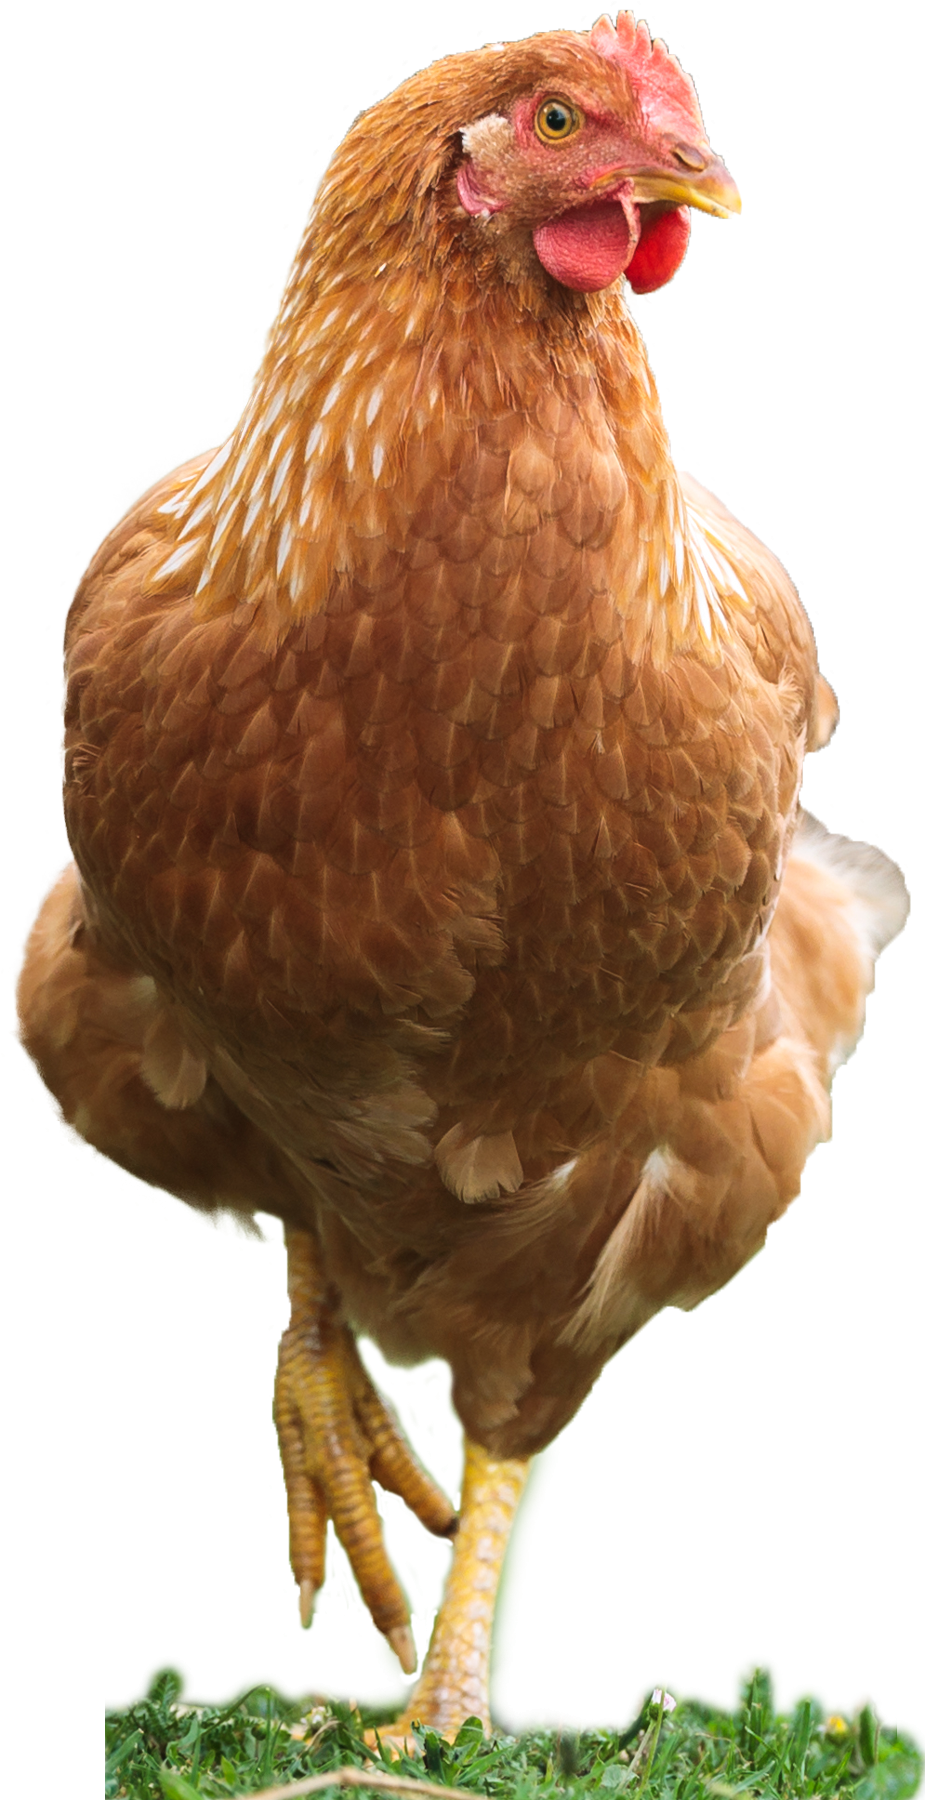 Come allevare correttamente i polli